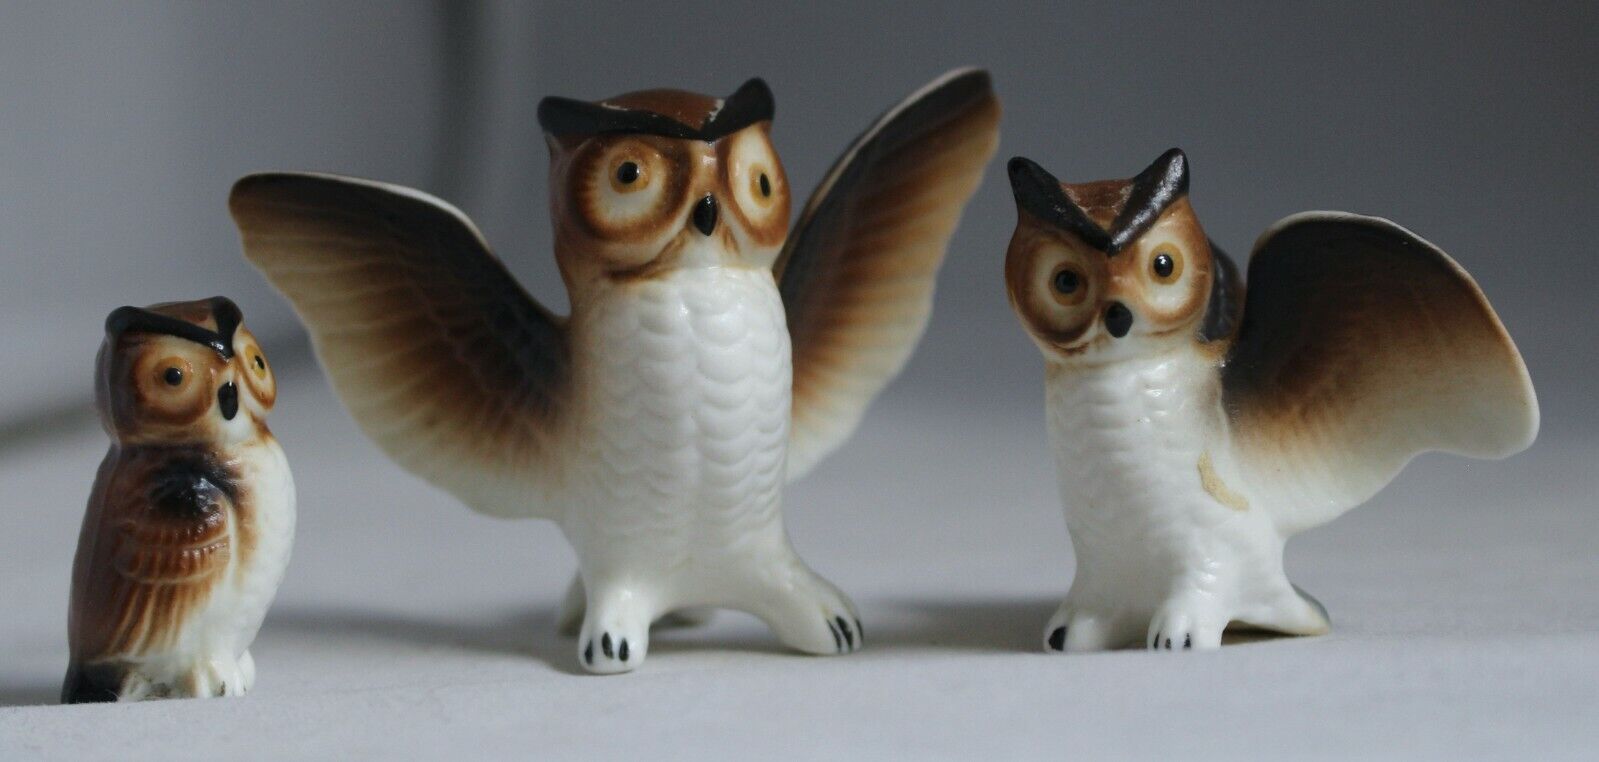 Miniature Vintage Ceramic Owl Figurines Family